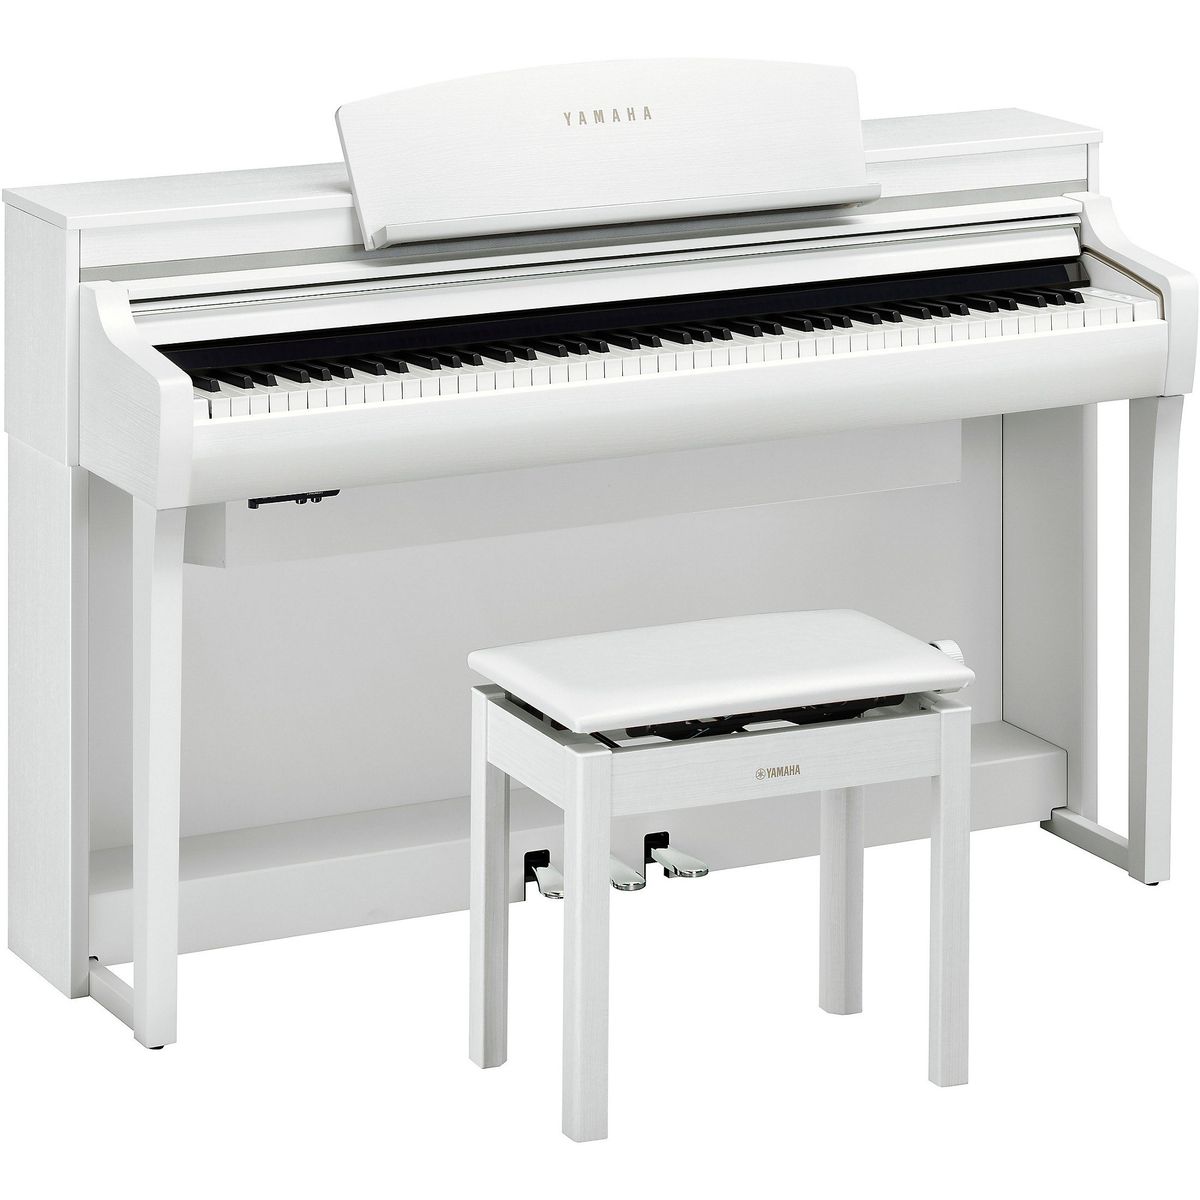 Цифровые пианино Yamaha CSP-275WH любимые мелодии и ритмы популярная музыка для фортепиано